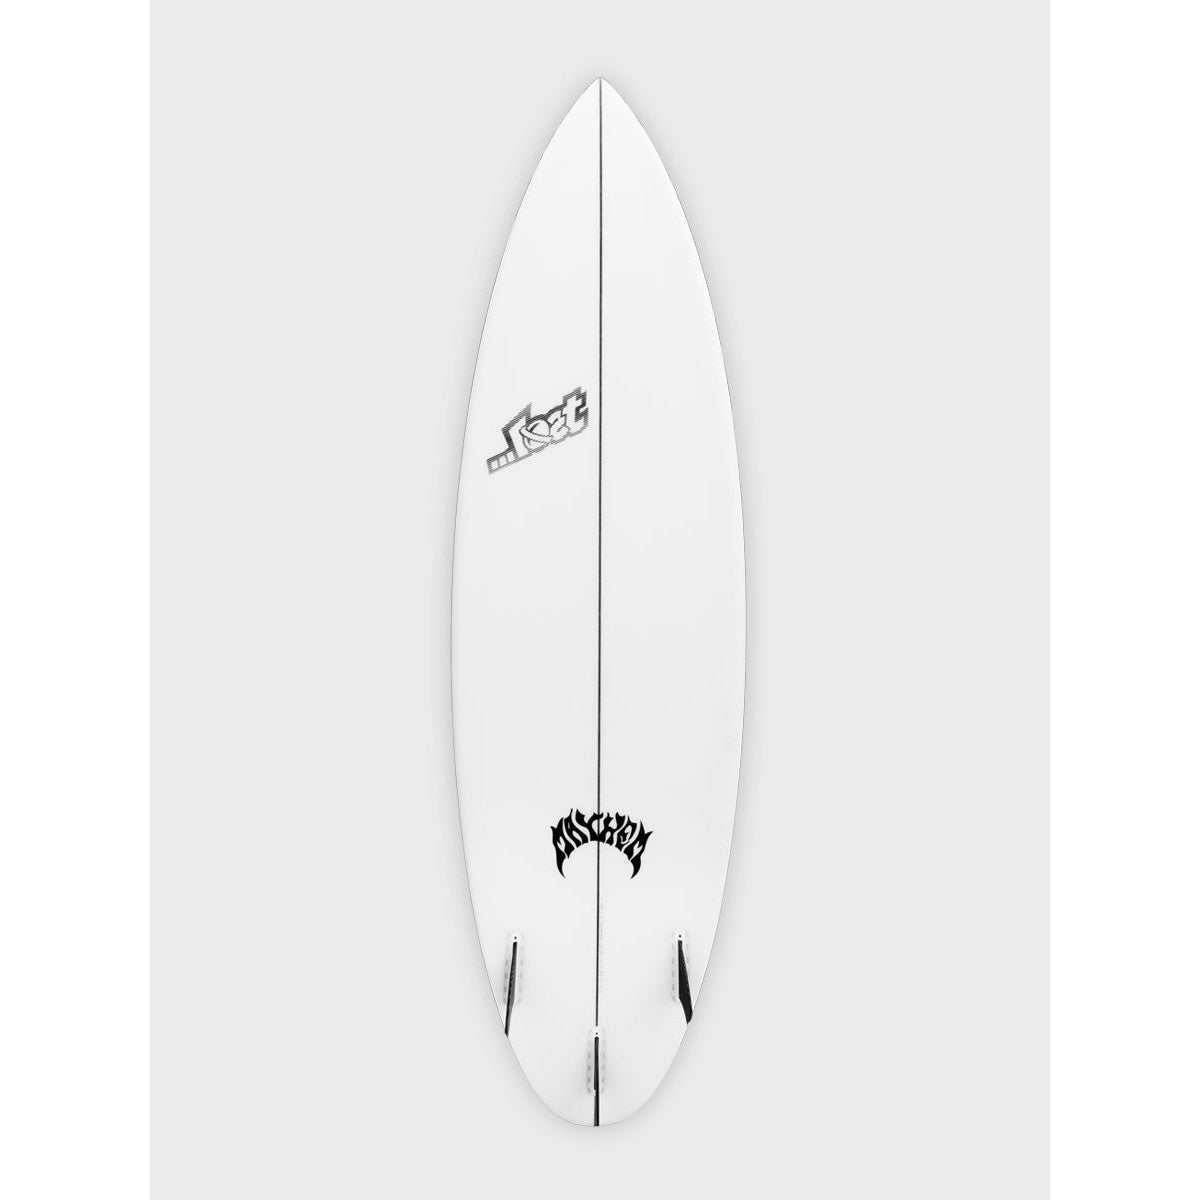 lost_surfboards-driver-3.0-deck-round-galway-ireland-blacksheepsurfco-bottom